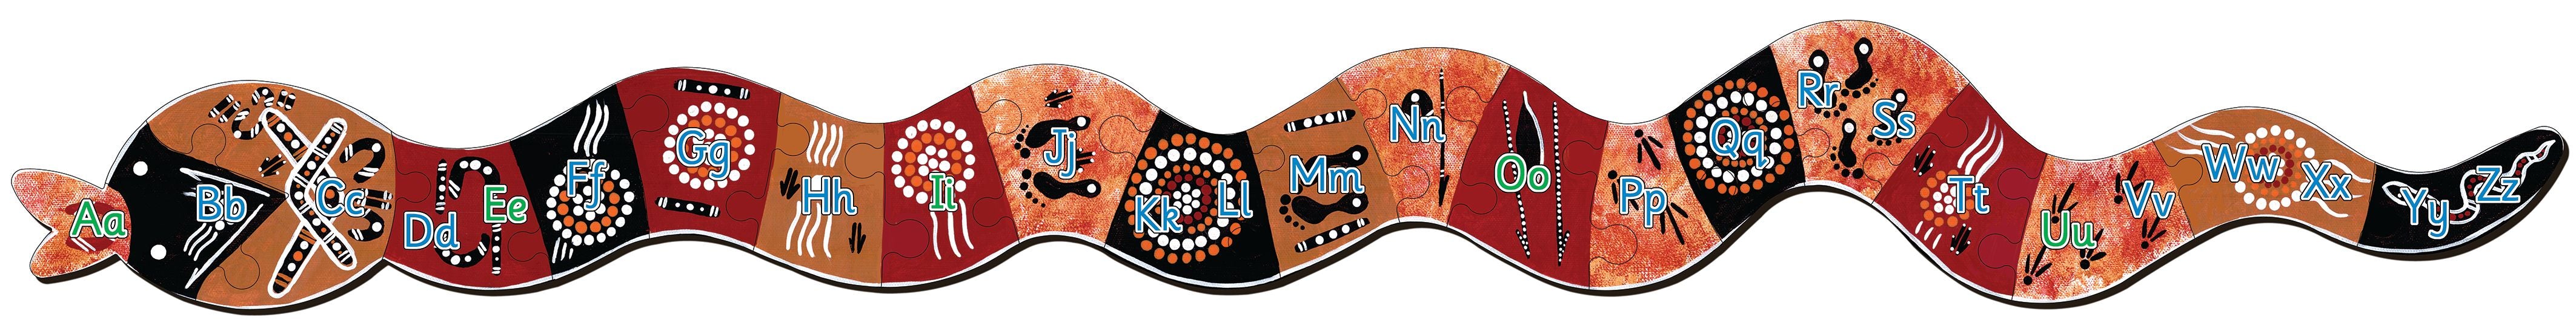 Tuzzles Aboriginal Art Serpent 26pc